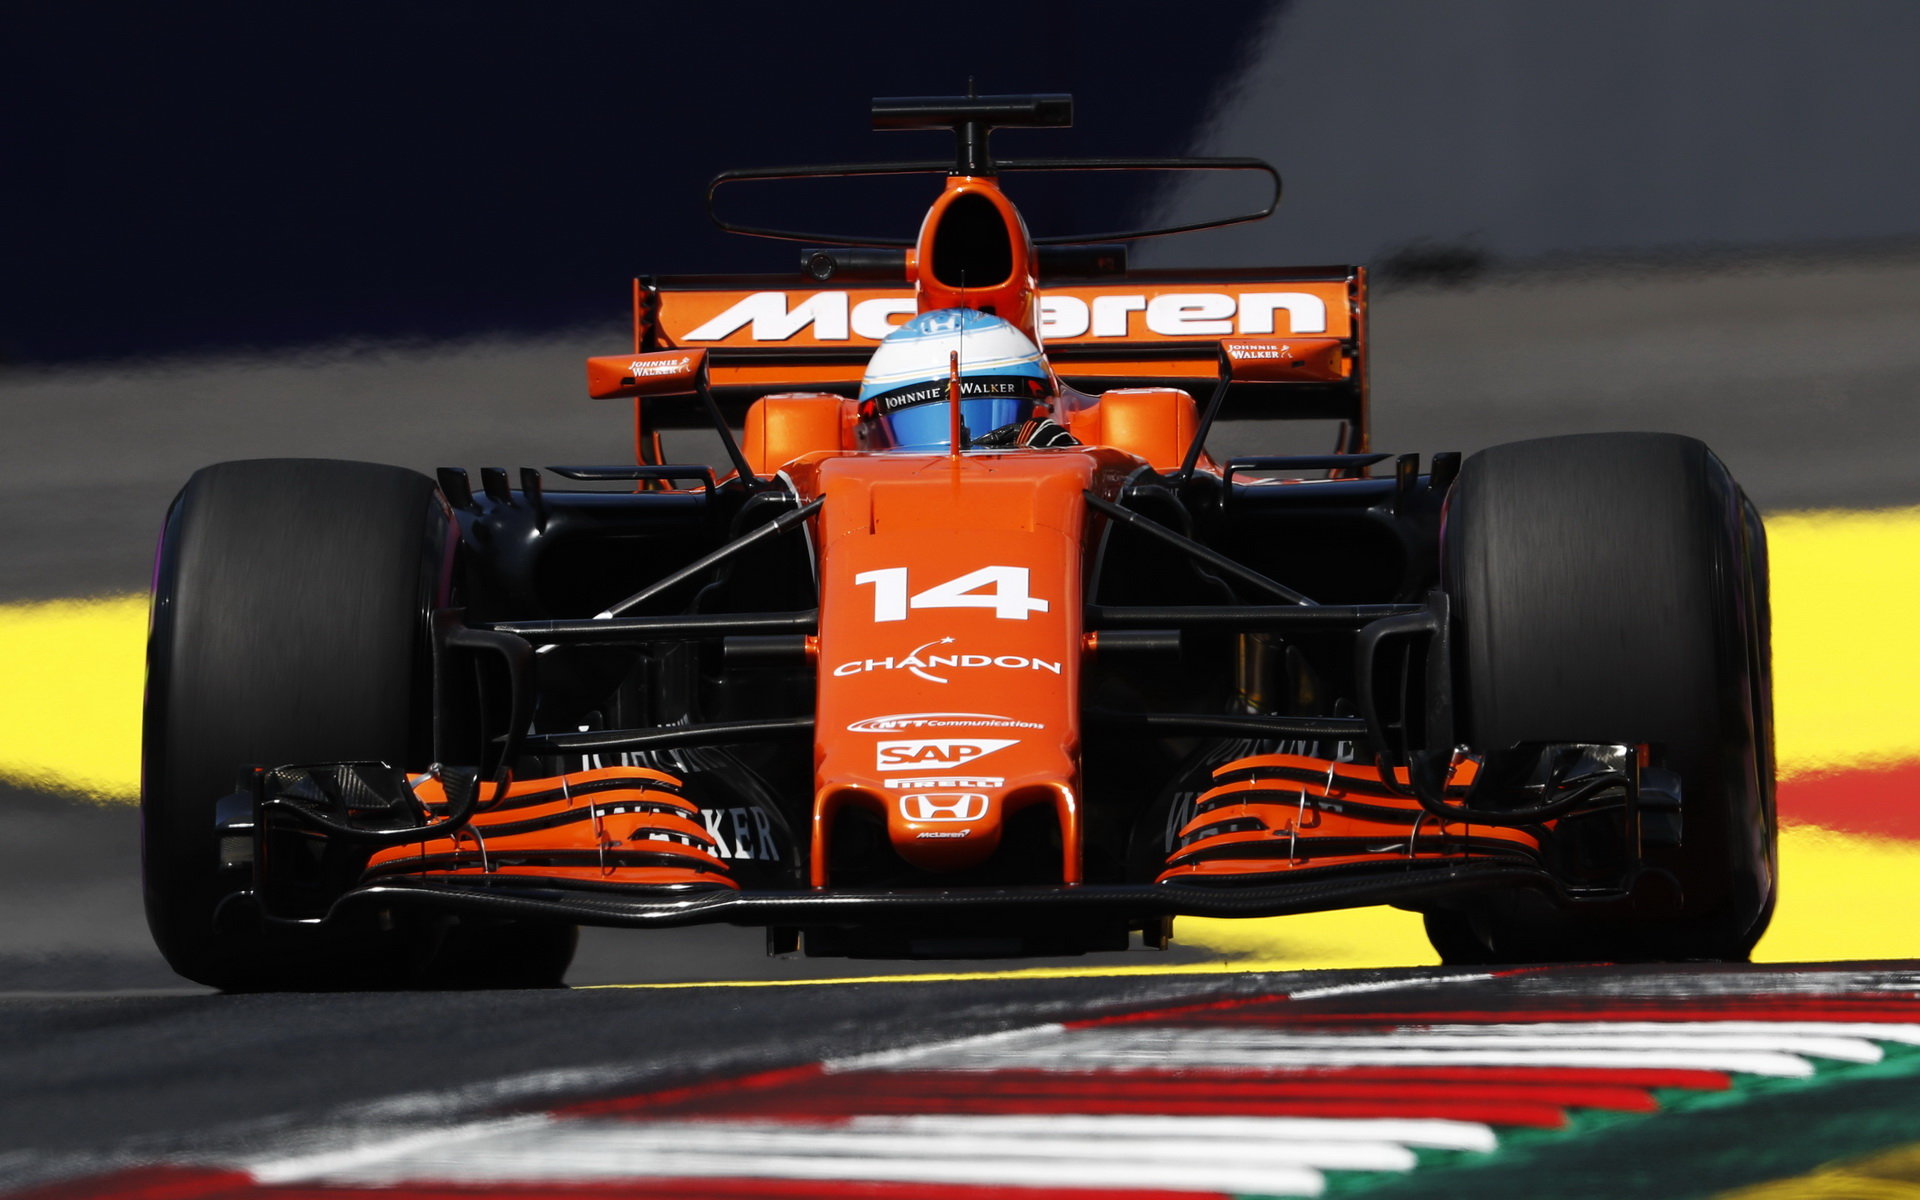 Alonso zaznamenal další letošní problém pohonné jednotky, kolikátý už?